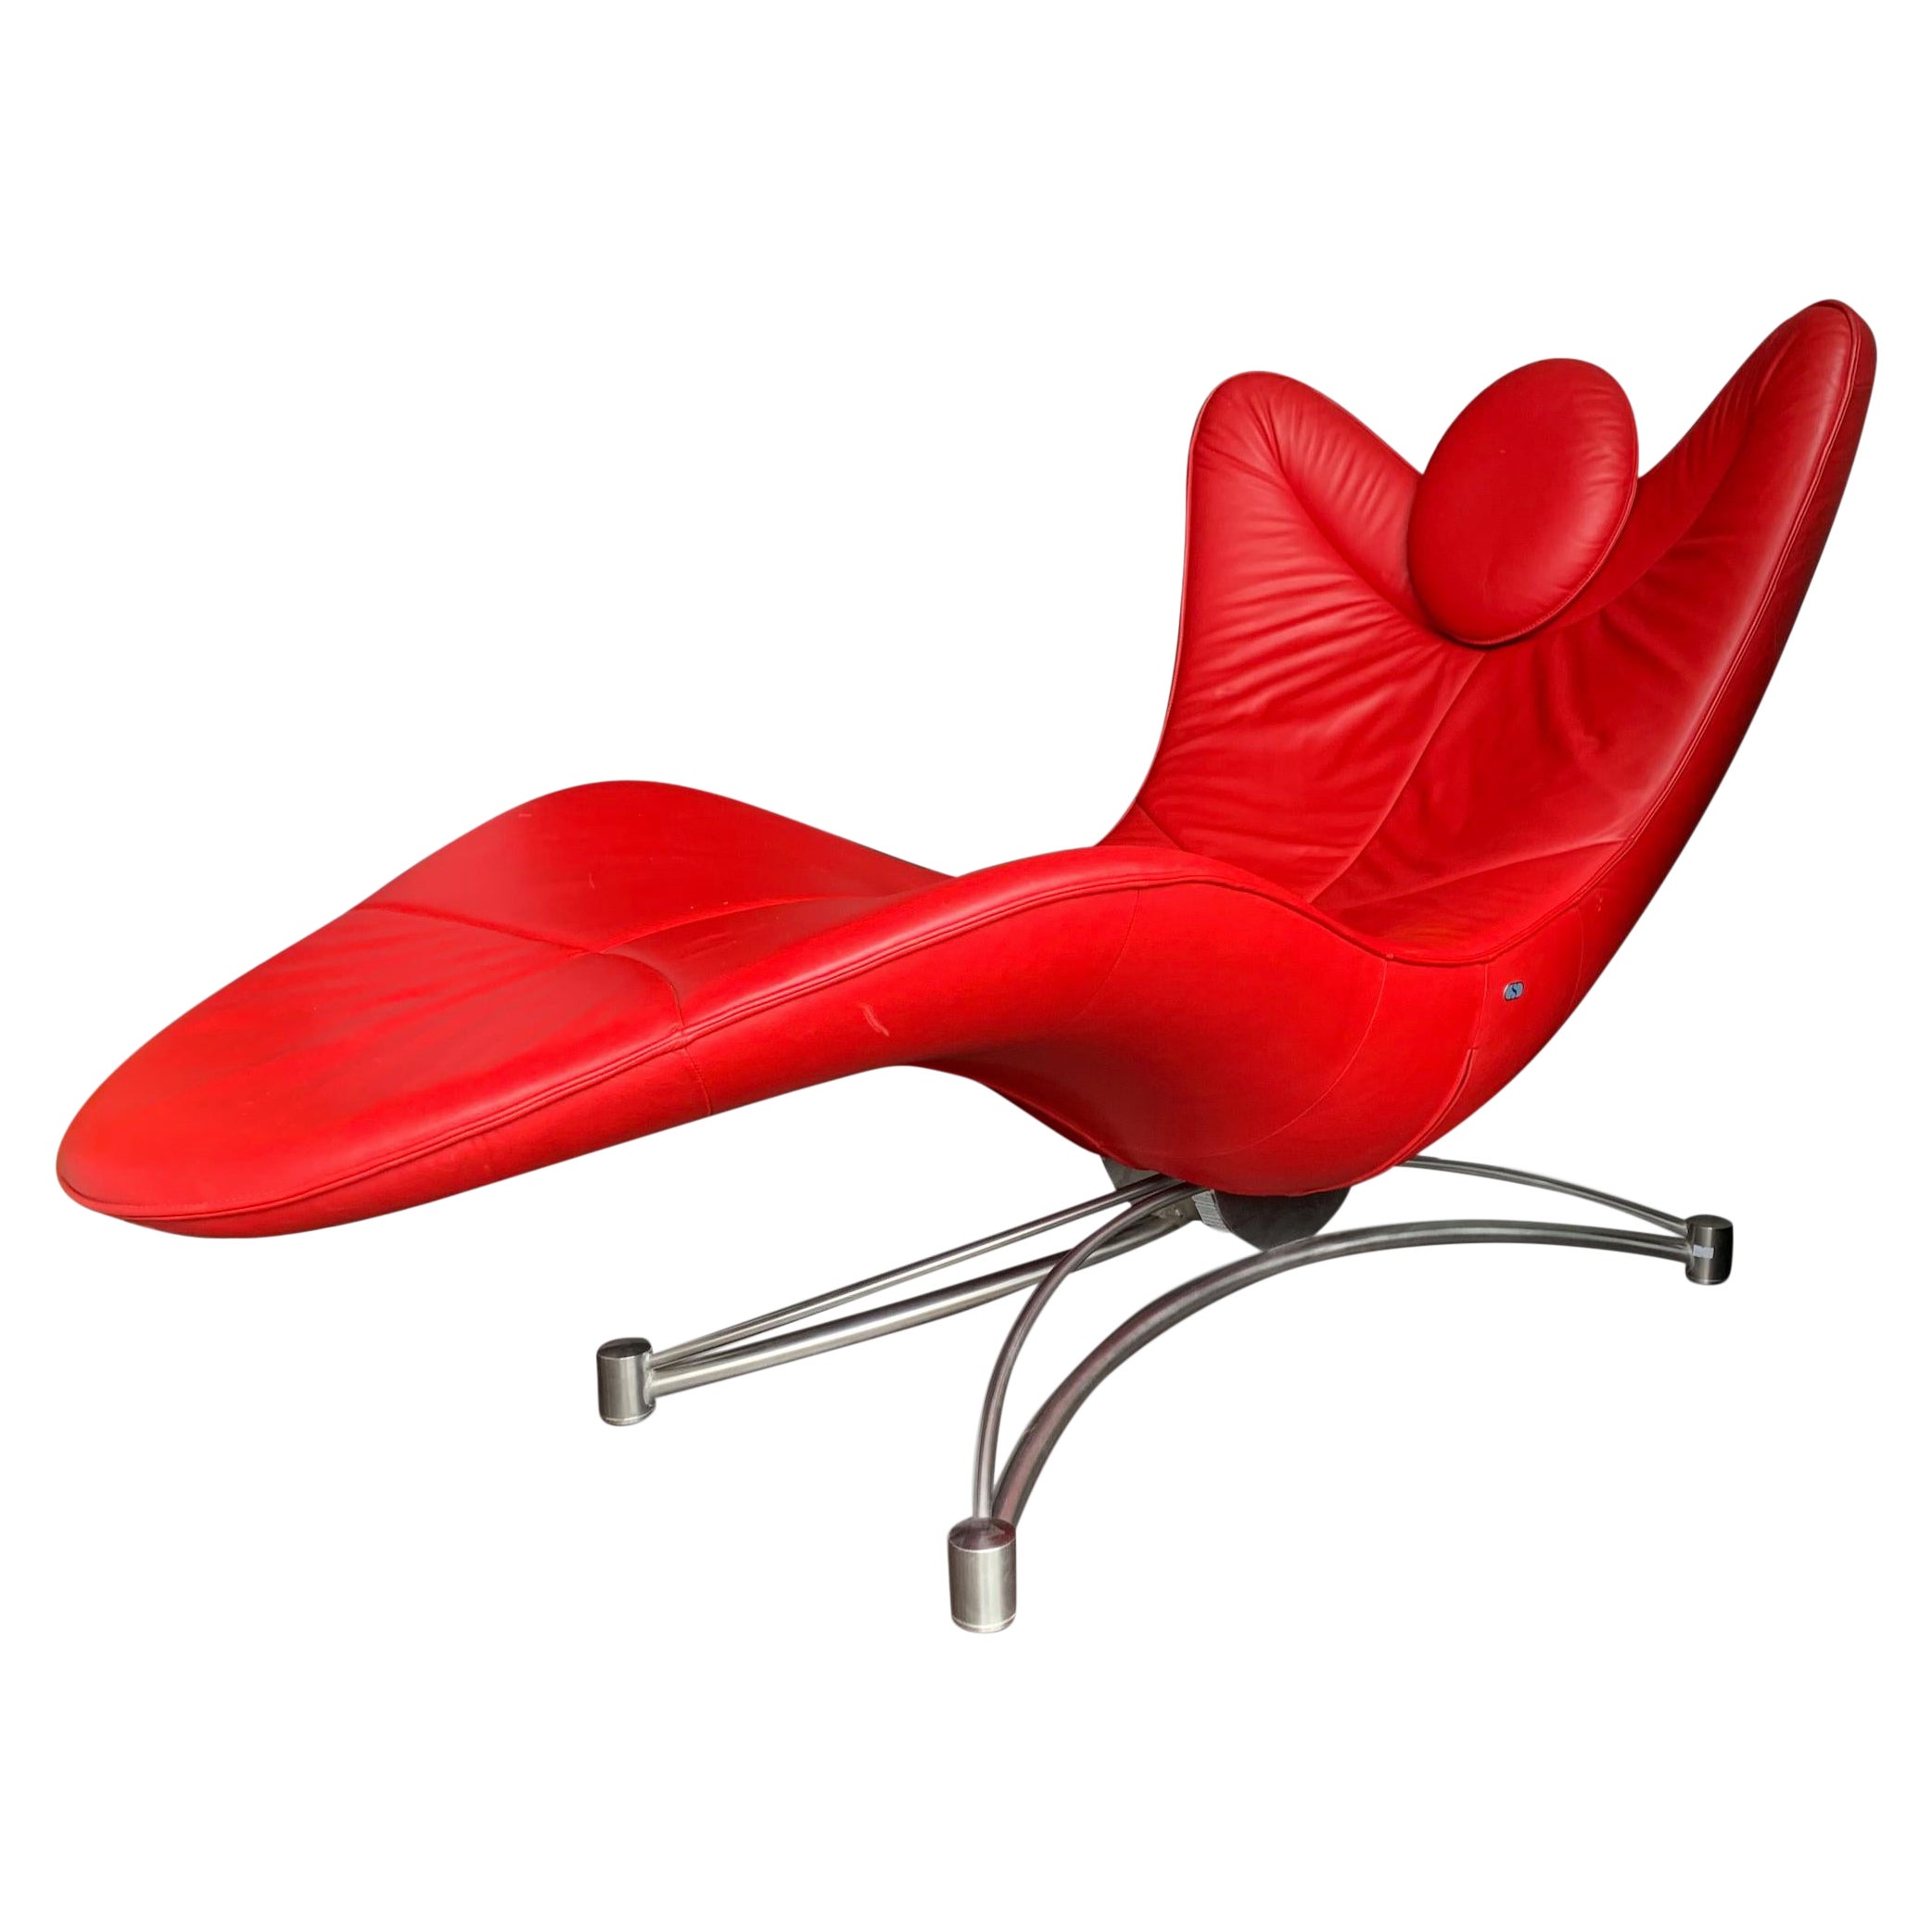 De Sede Chaise Lounge Modell Ds 151 aus rotem Leder und Stahl in der Schweiz entworfen von Jane Worthington
Metall-Label an der Unterseite des Stuhls.

Museen
Centre Georges Pompidou, Paris
Magna Pars, Mailand
MAK (Museum für Angewandte Kunst)